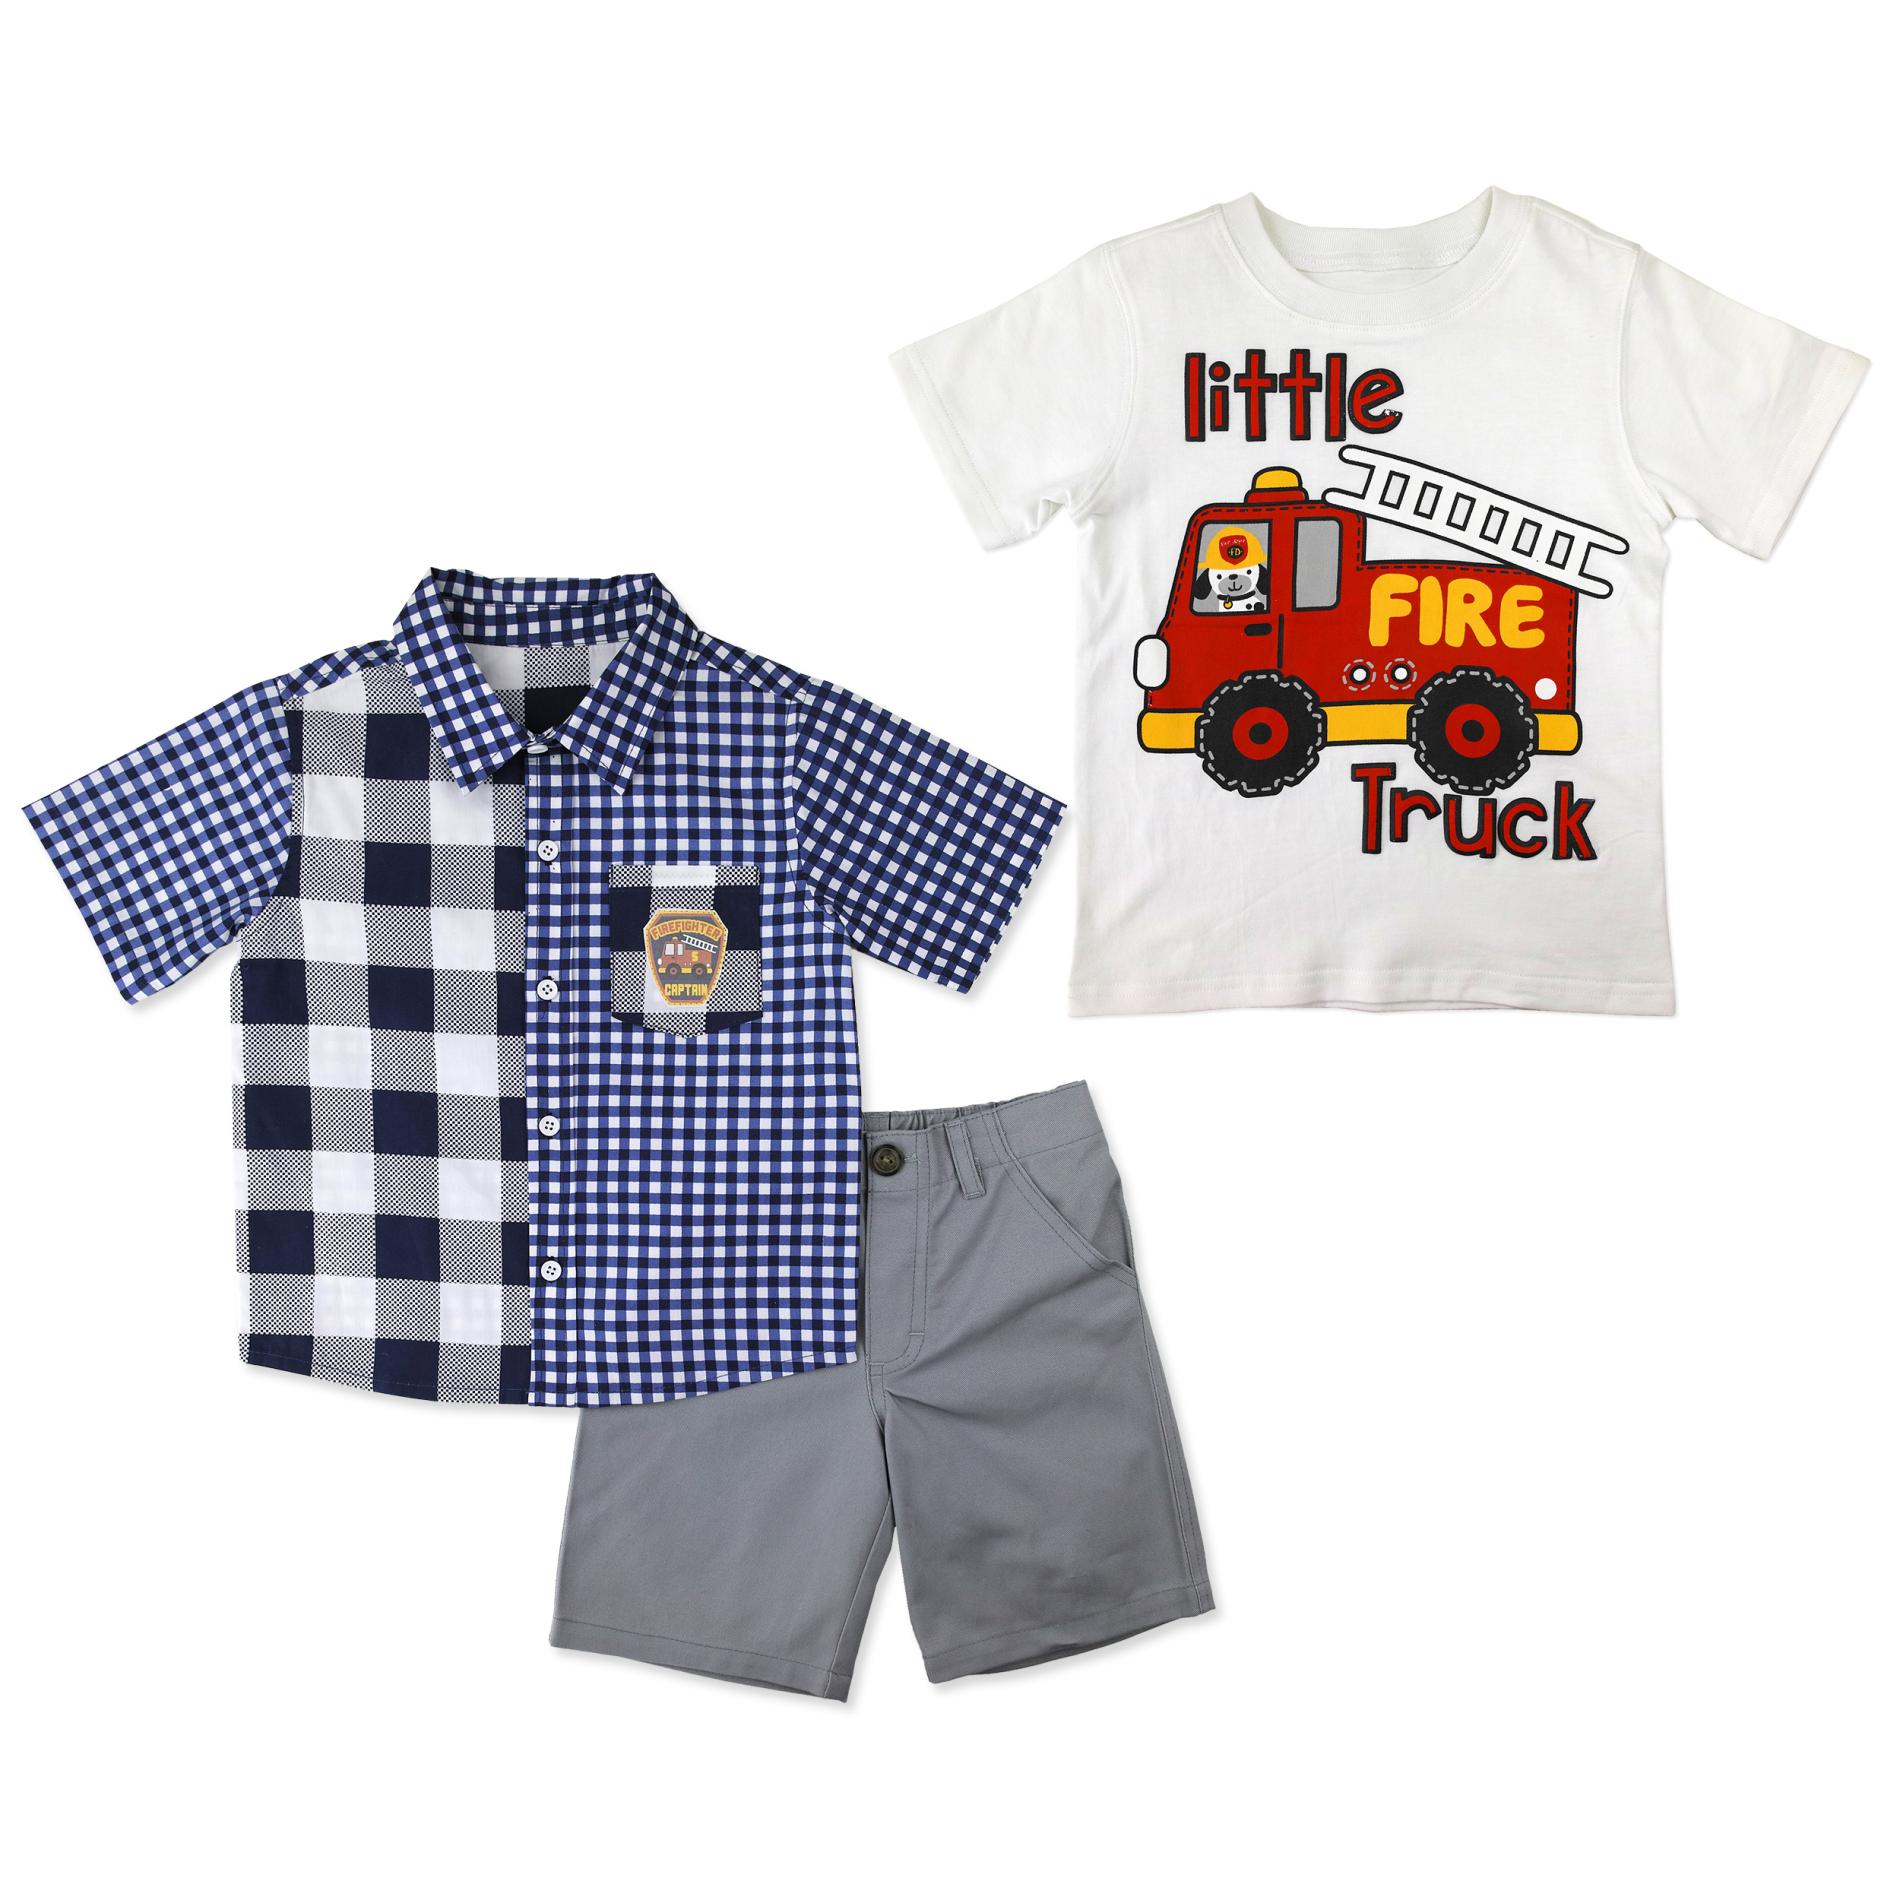 Little Rebels Infant & Toddler Boys' Button-Front Shirt, T-Shirt & Shorts - Firetruck